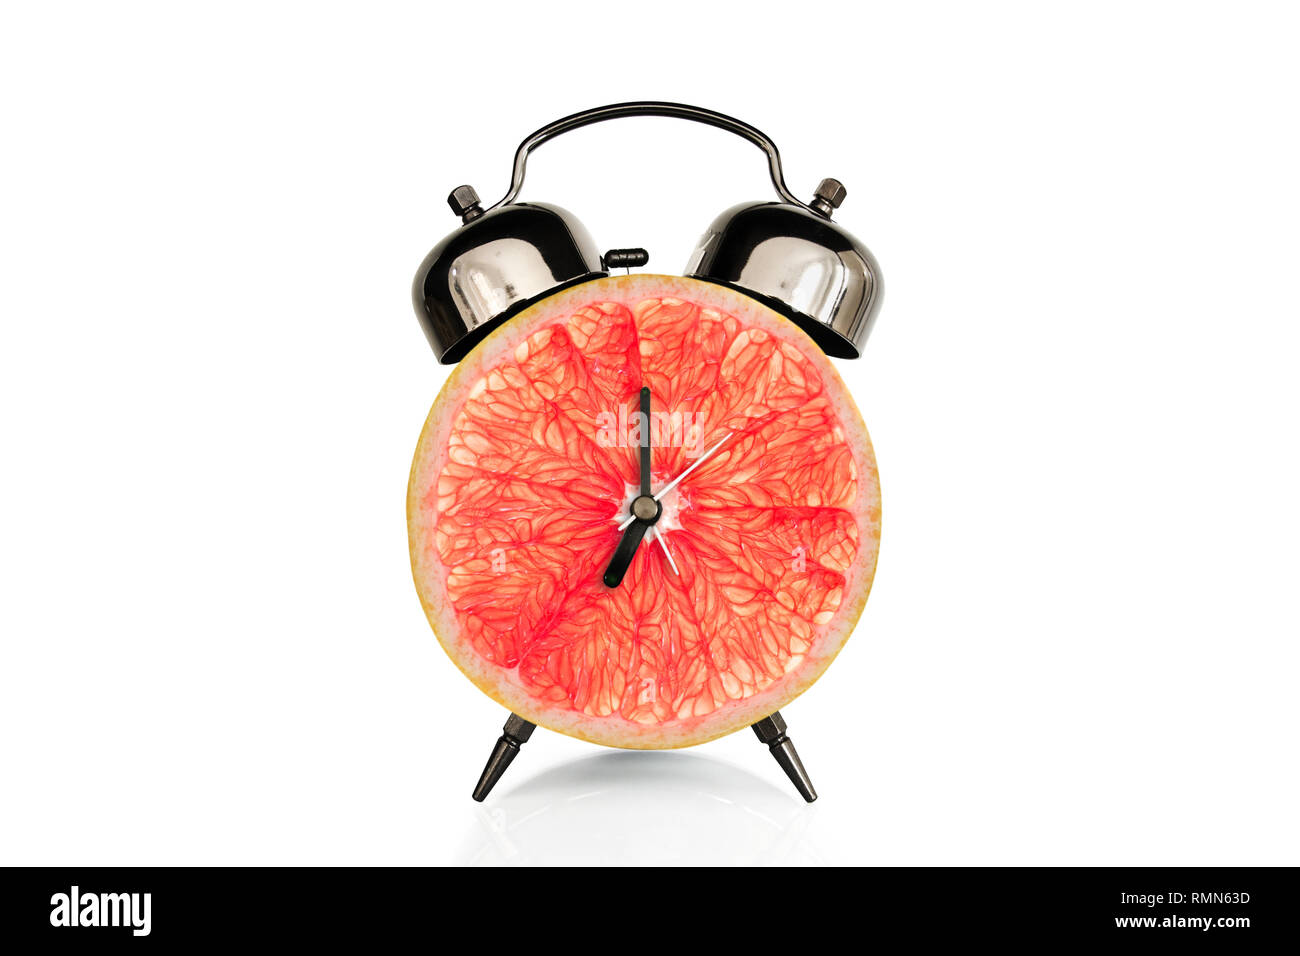 Grapefruiti slice en reloj de alarma, aislado sobre fondo blanco, fruta y vitaminas dieta al concepto de nutrición desayuno Foto de stock